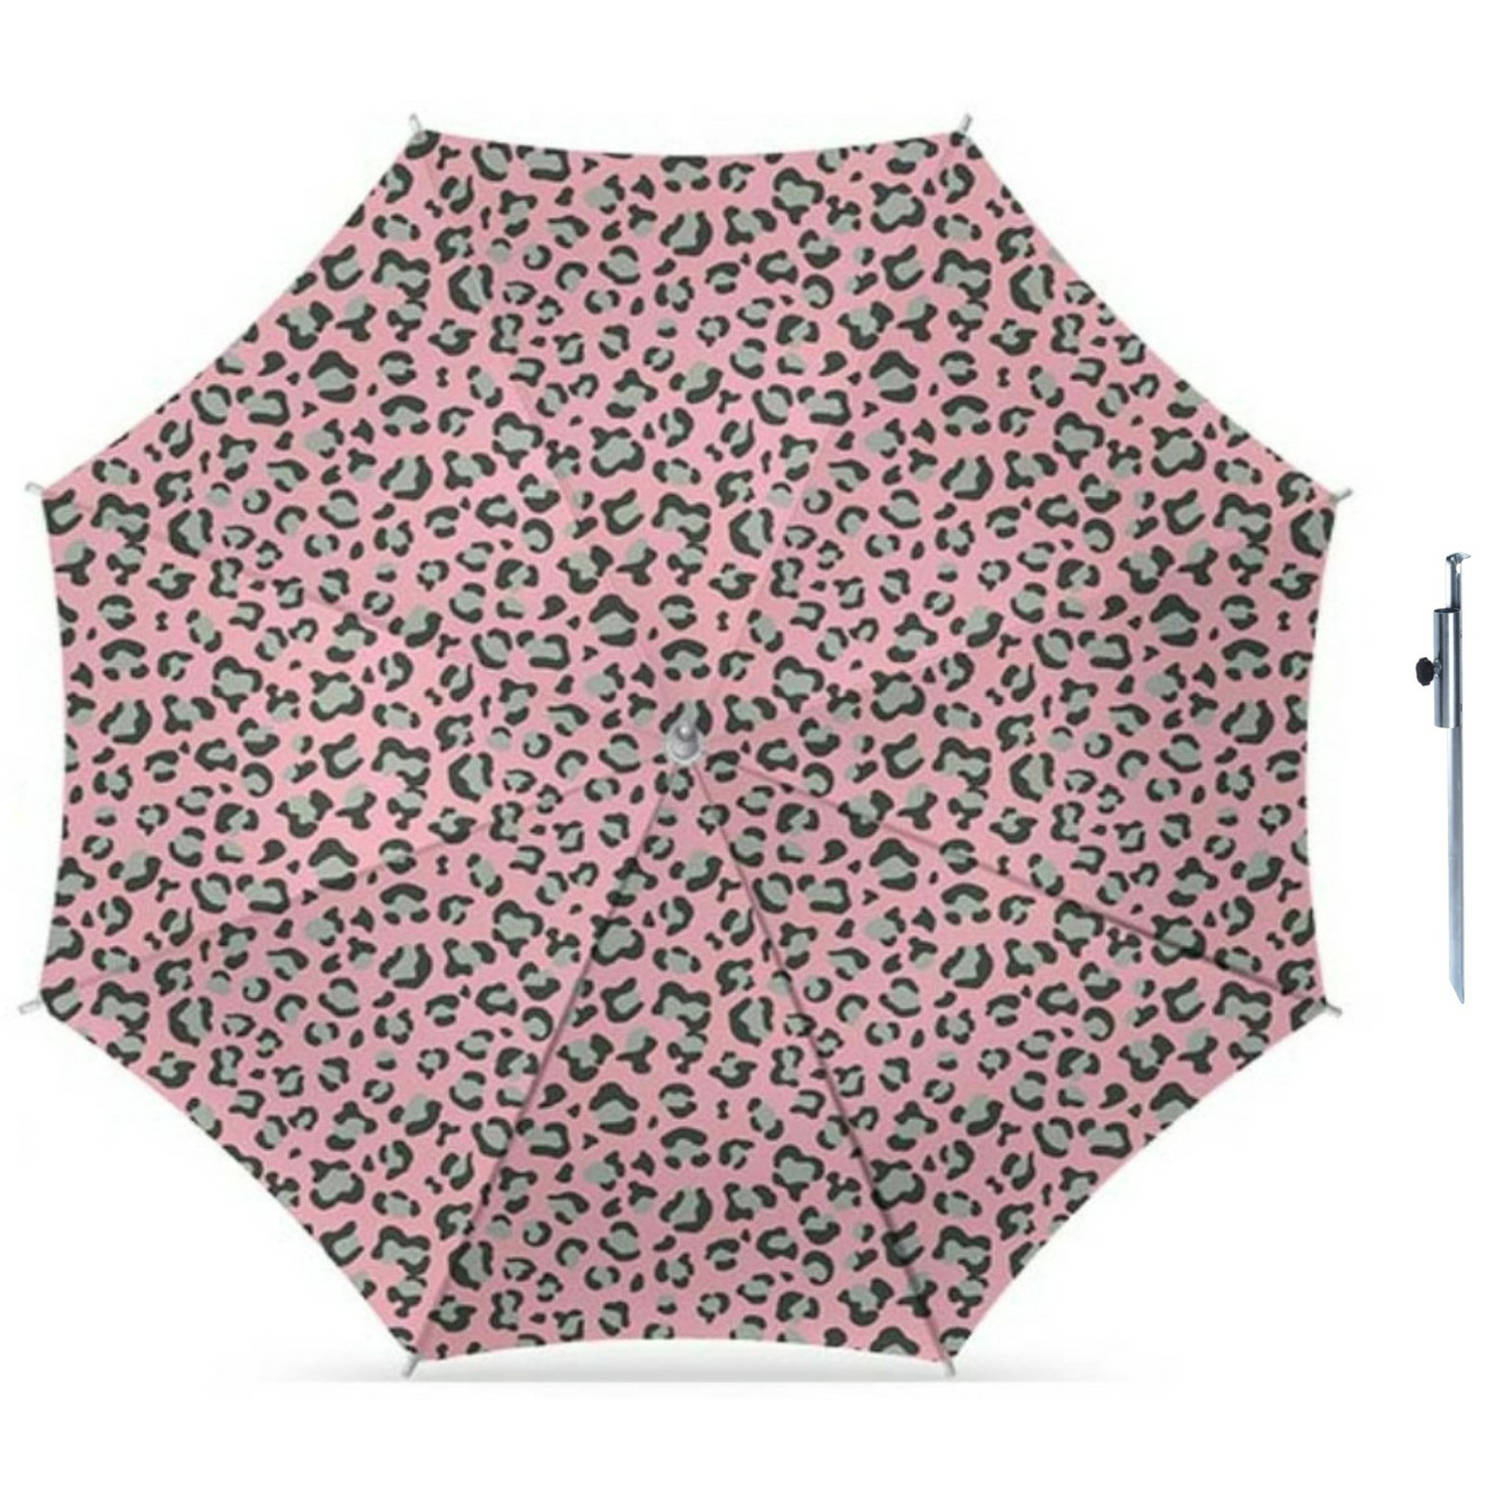 Parasol luipaard roze print D160 cm incl. draagtas parasolharing 49 cm Parasols